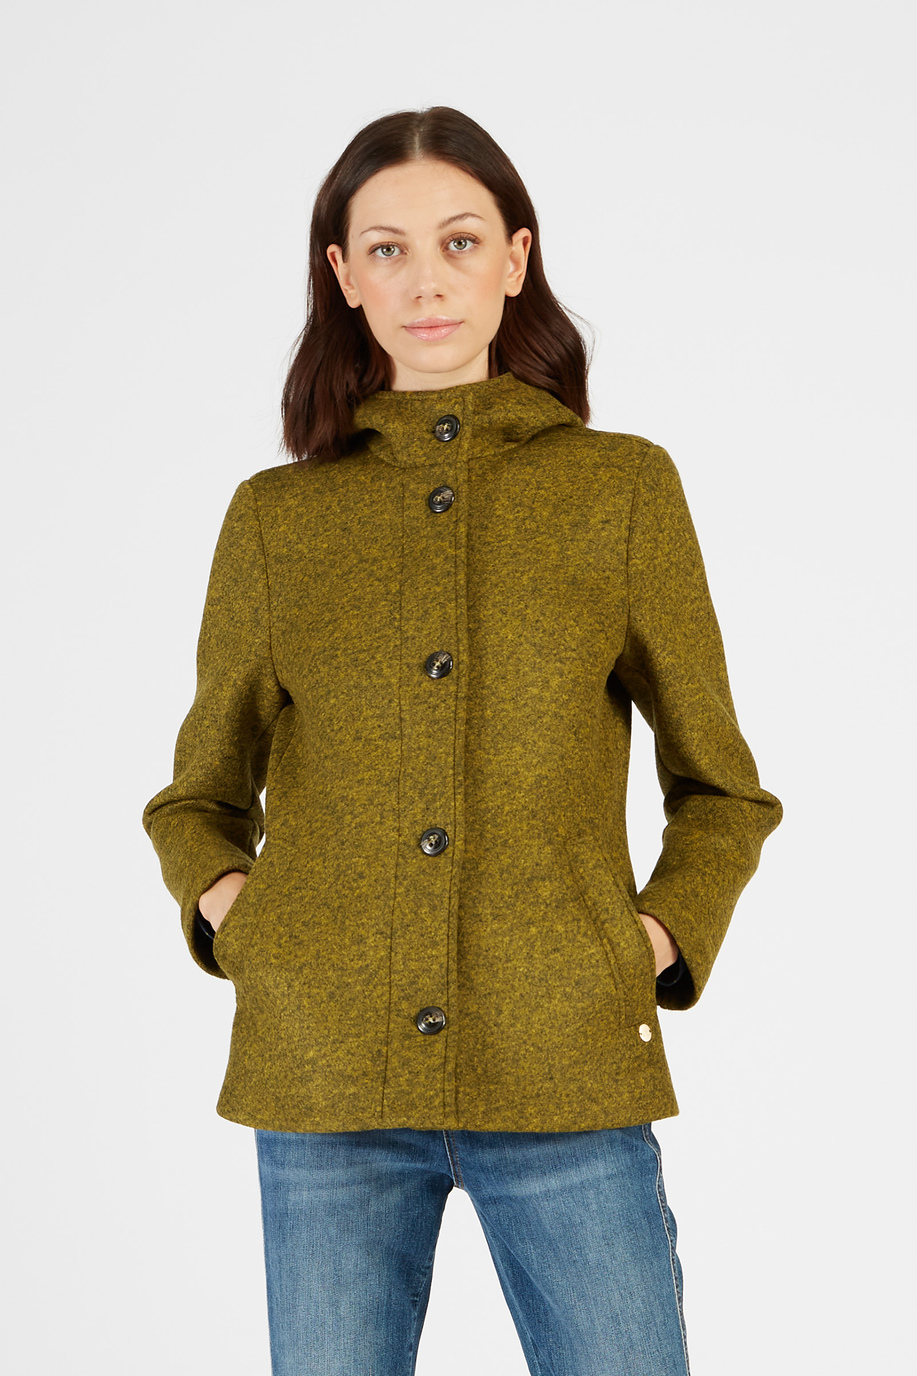 Damen Jacke in Wolloptik mit Kapuze und Reißverschluss - Unsere Favoriten für sie | La Martina - Official Online Shop